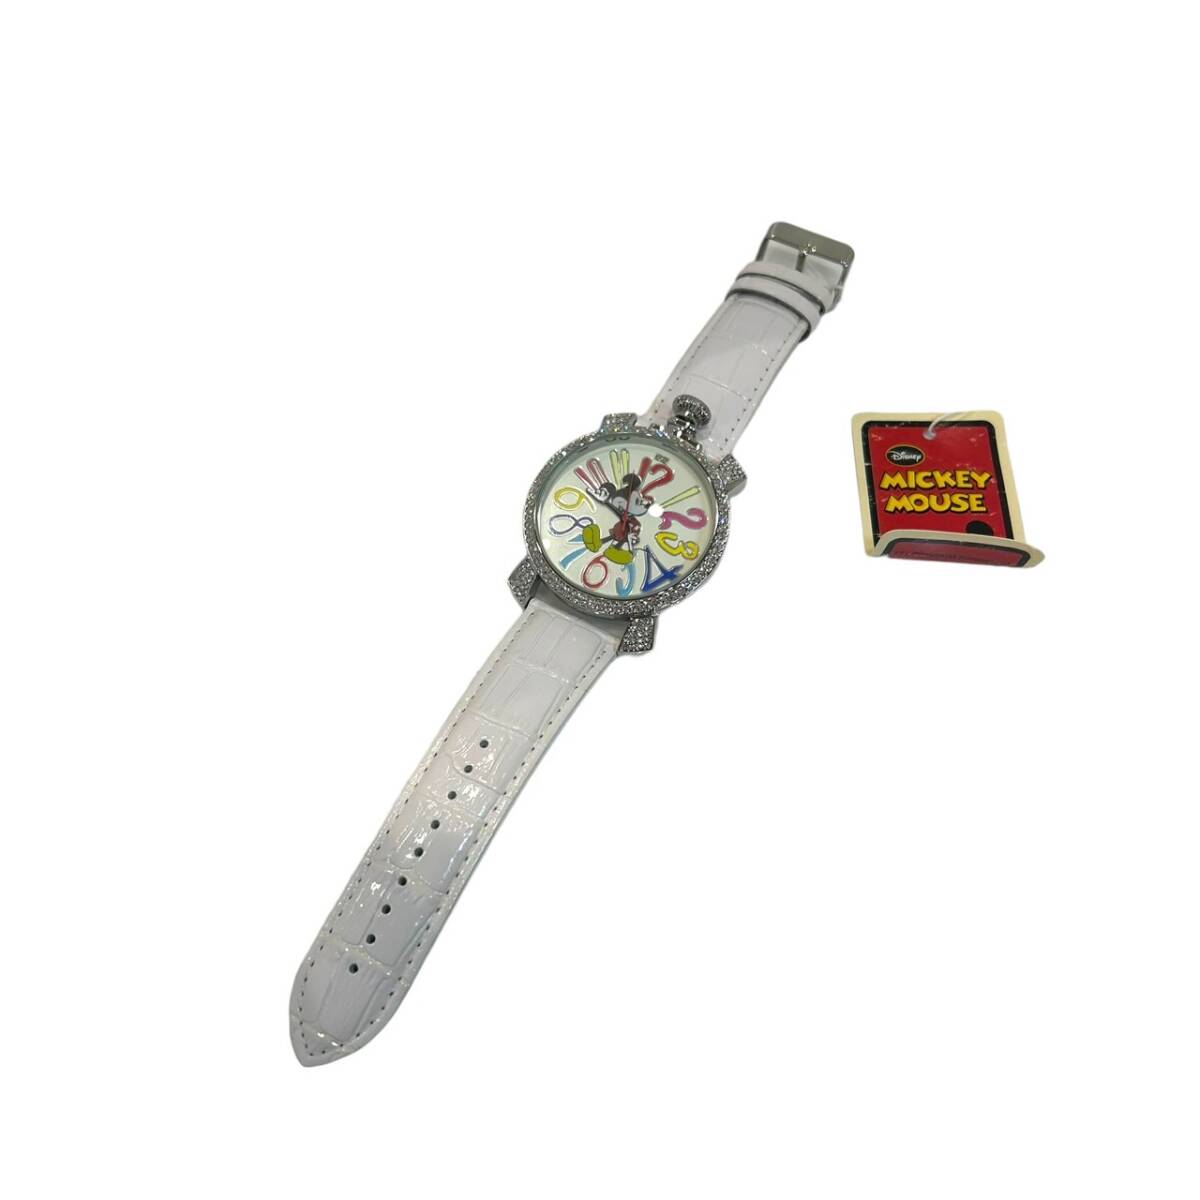  Mickey часы Limited Edition коробка есть музыкальная шкатулка 0712/2000 2000шт.@ ограничение наручные часы 